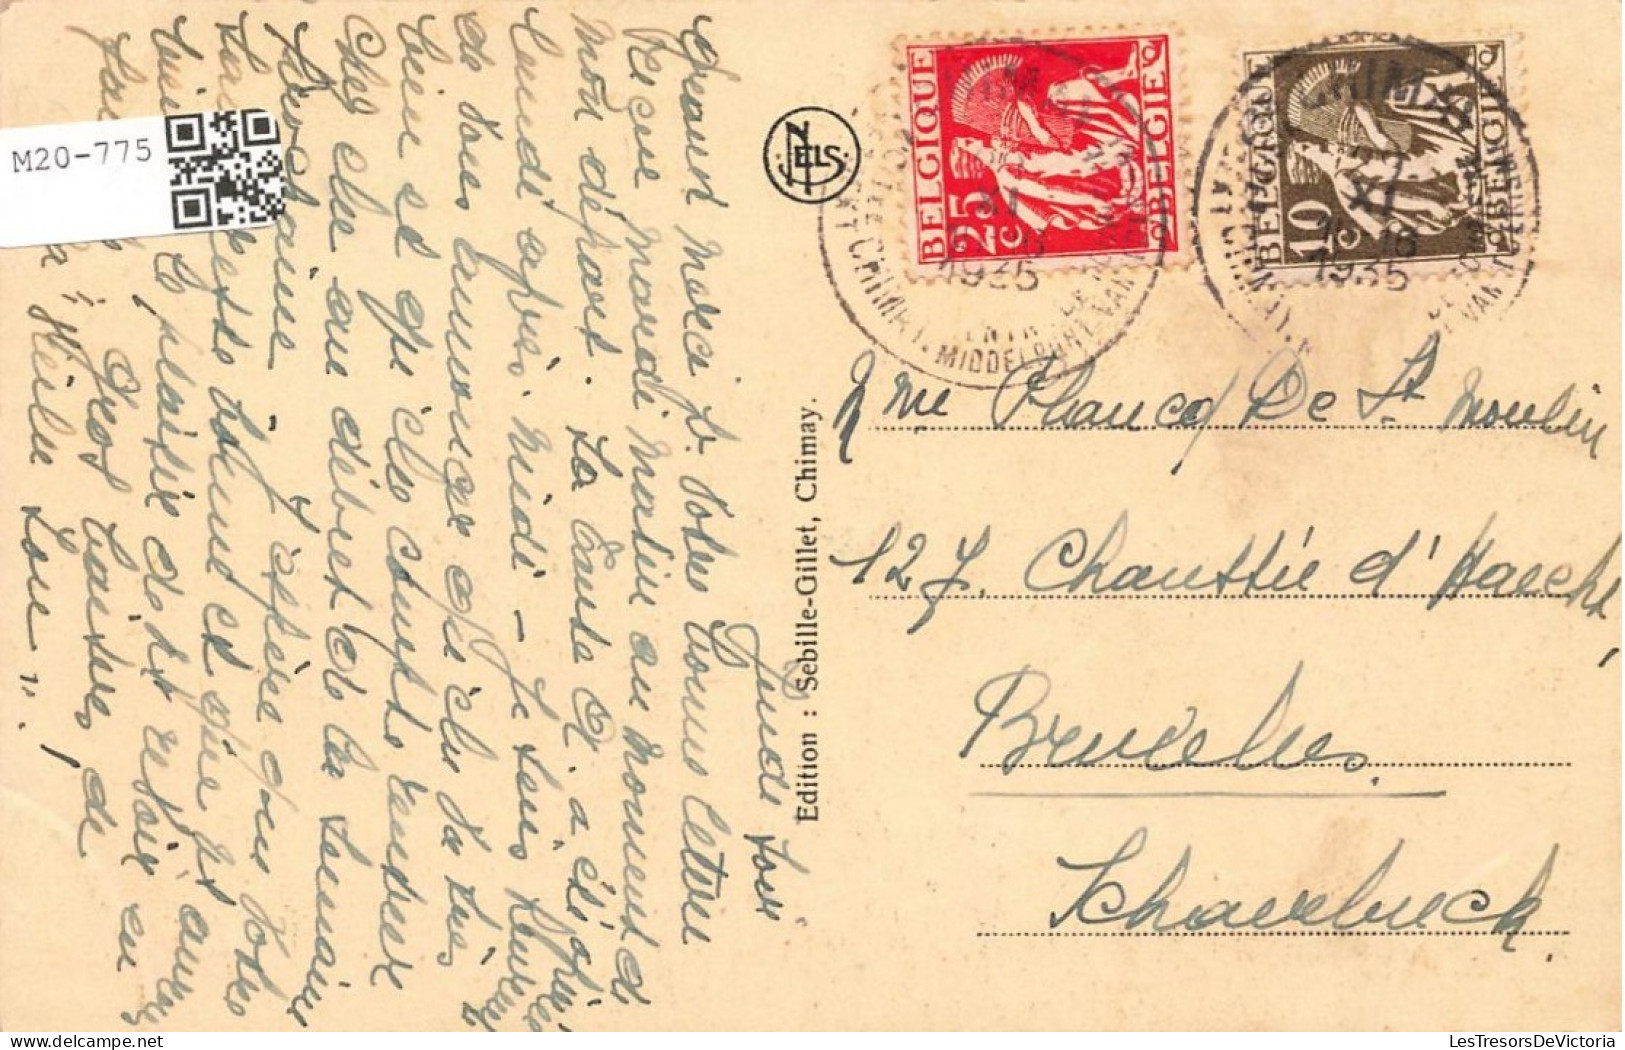 BELGIQUE - Chimay - La Place - Eglise  - Carte Postale Ancienne - Chimay